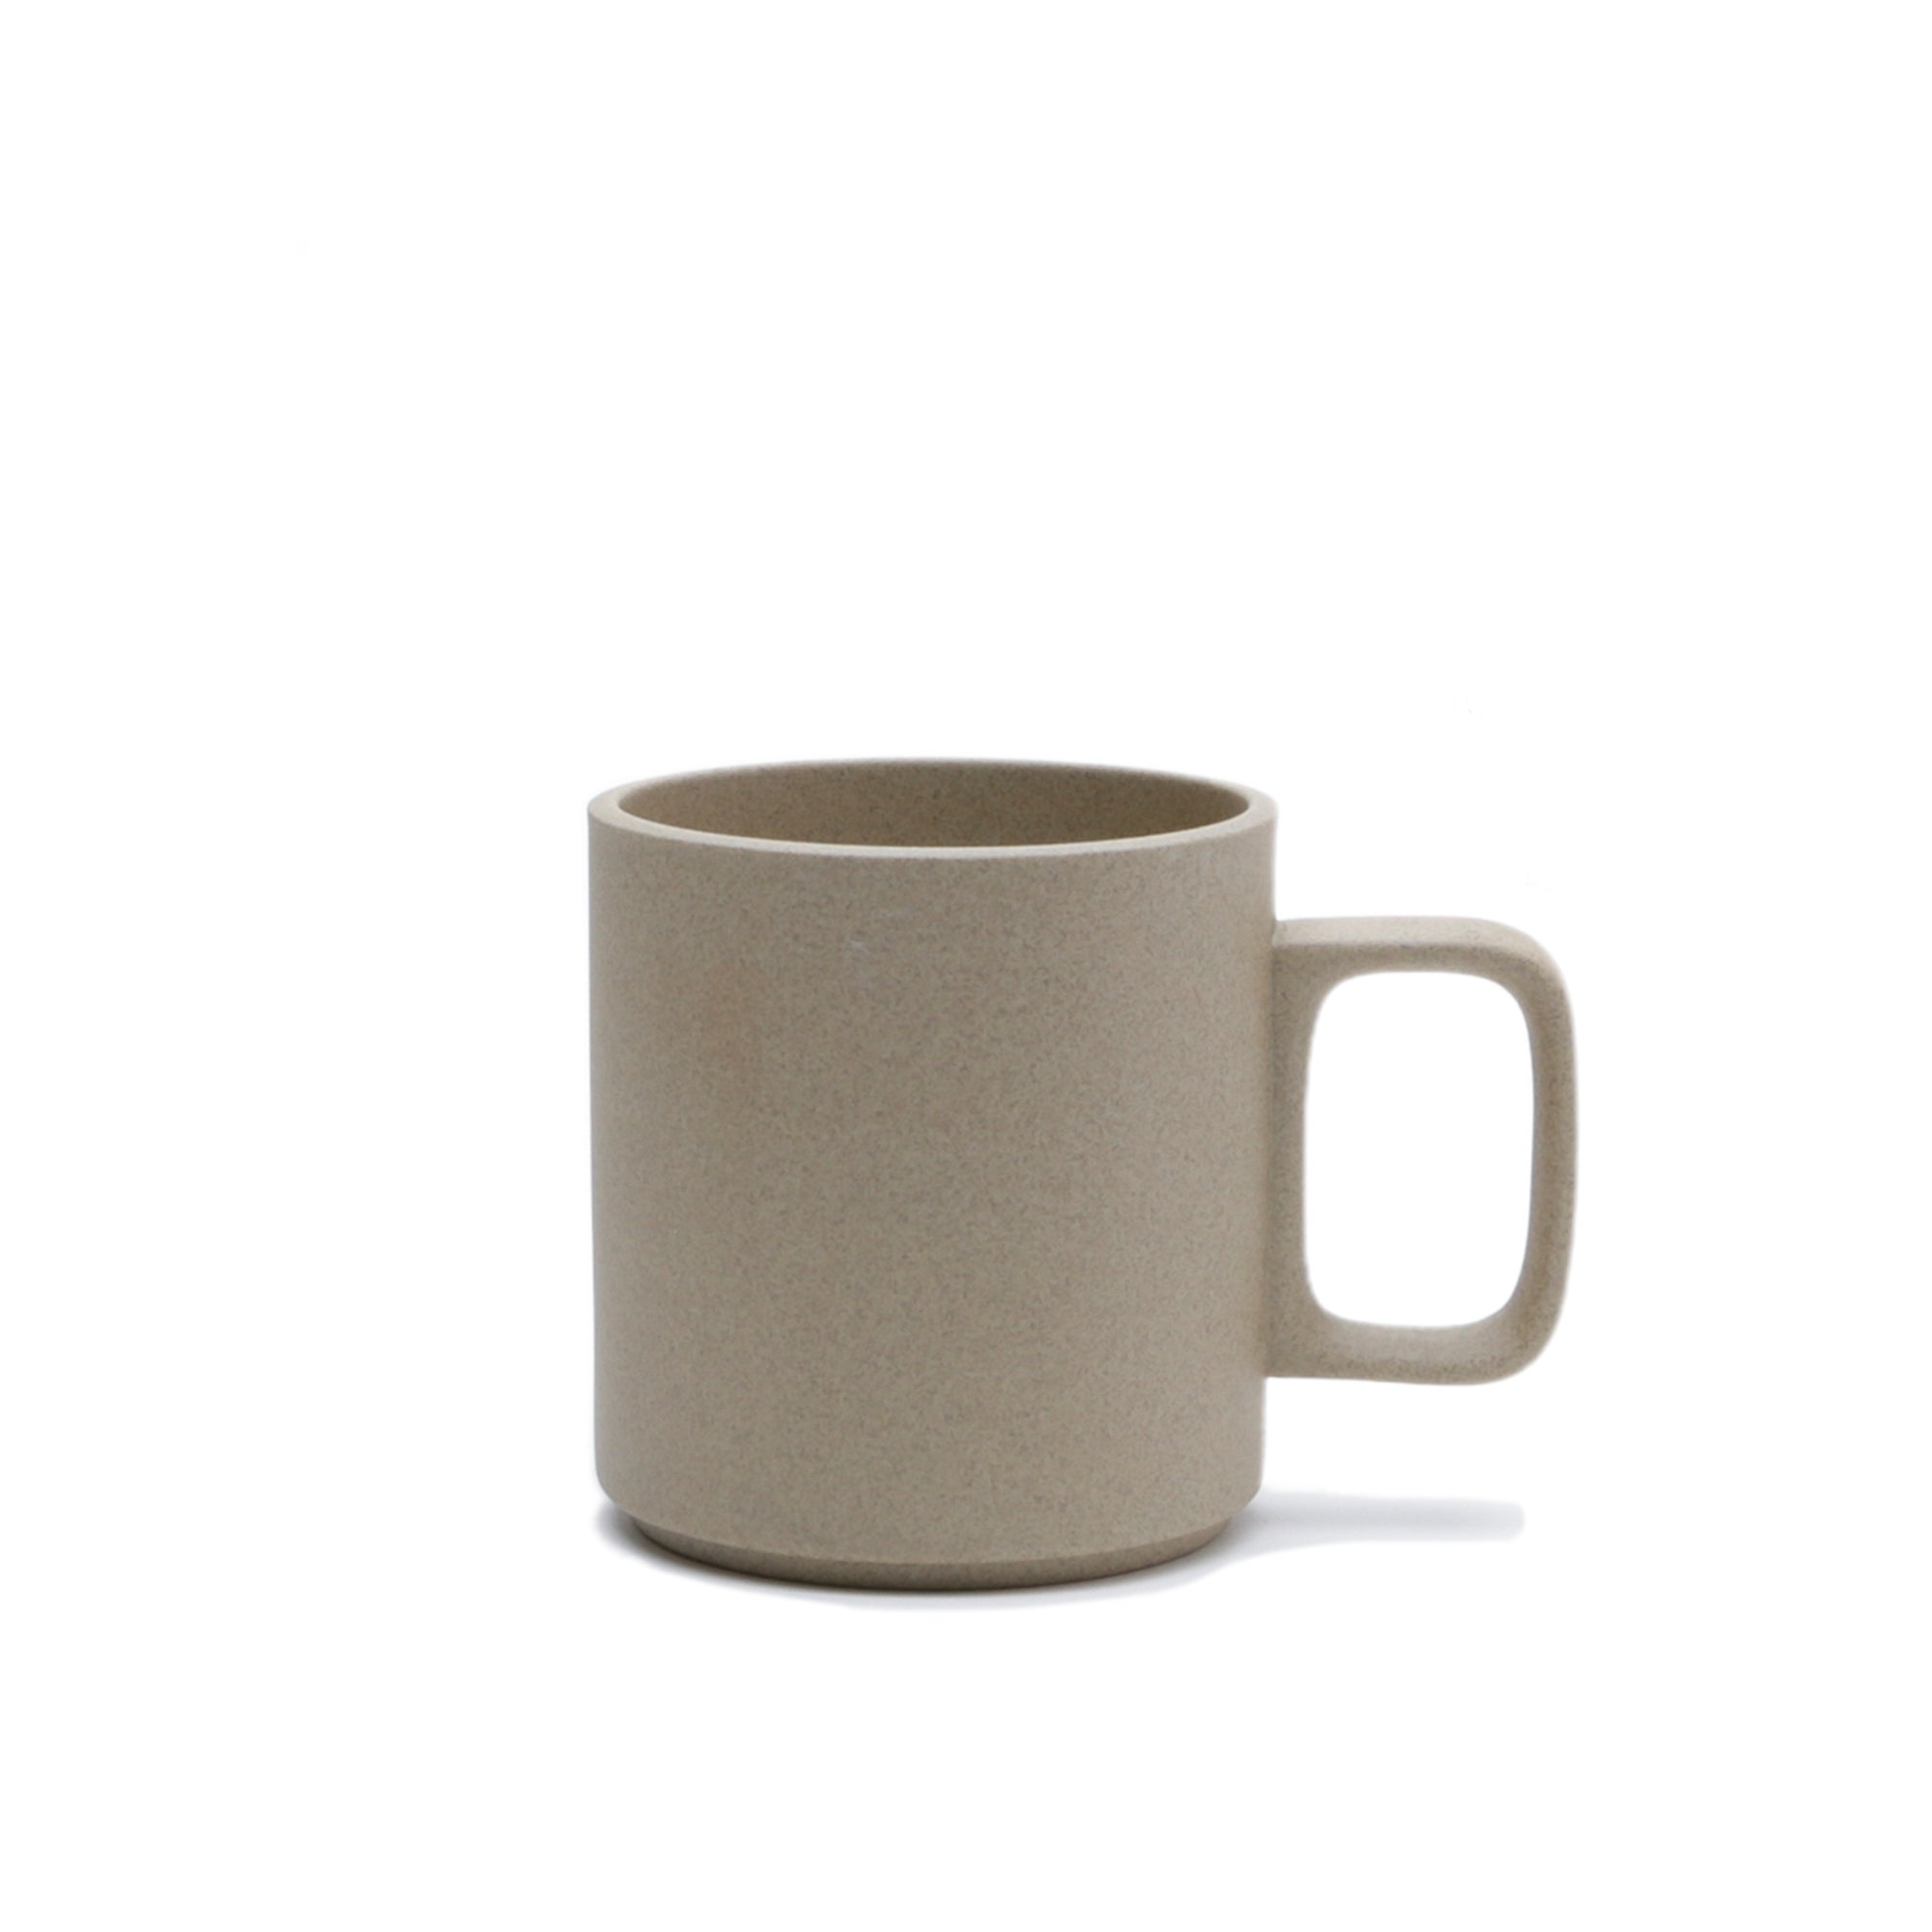 Natural Porcelain Ceramic Mug